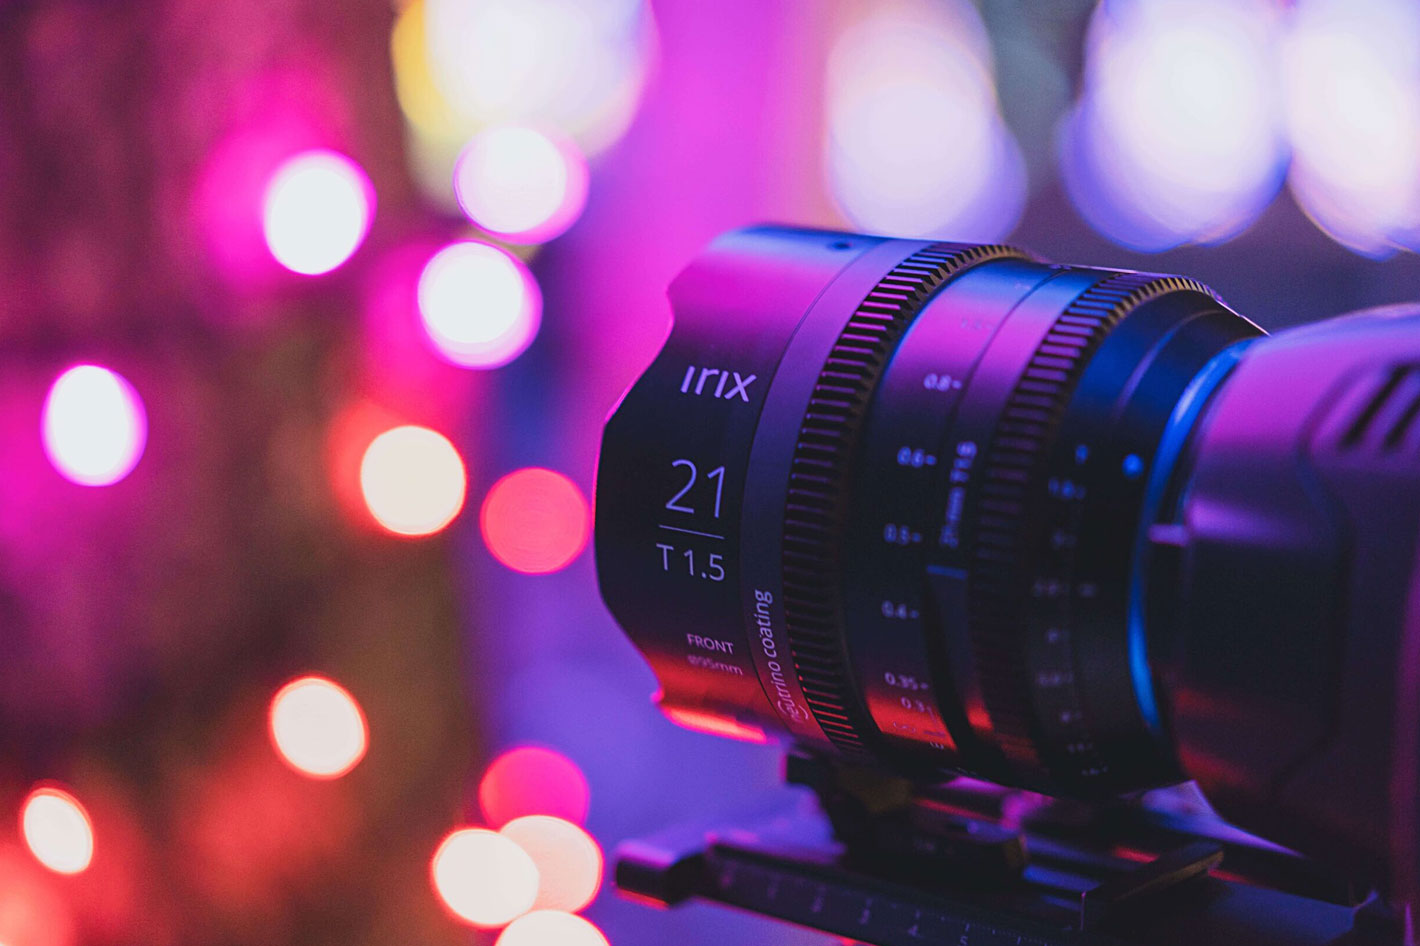 The new Irix Cine lens is the all-new full frame 21mm T1.5